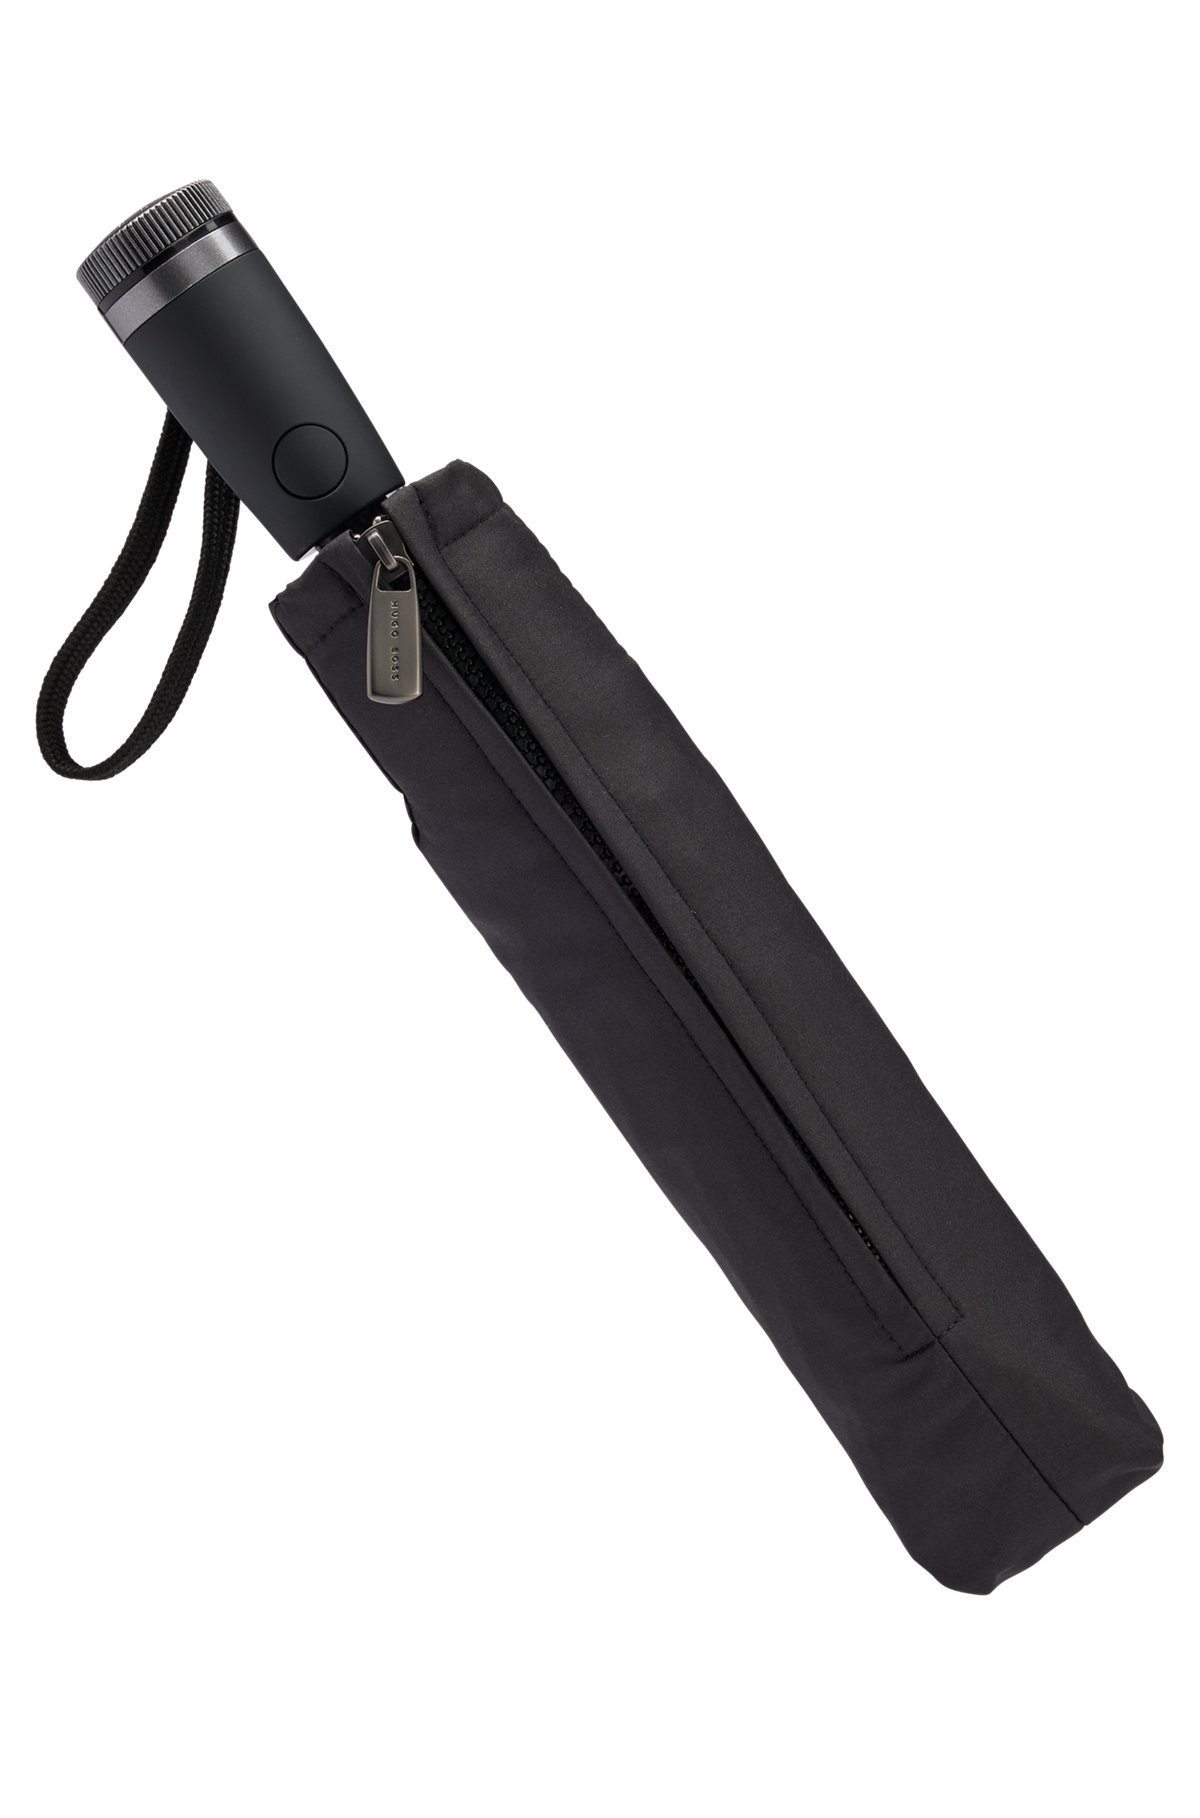 Parapluie de poche avec bords gris, Noir